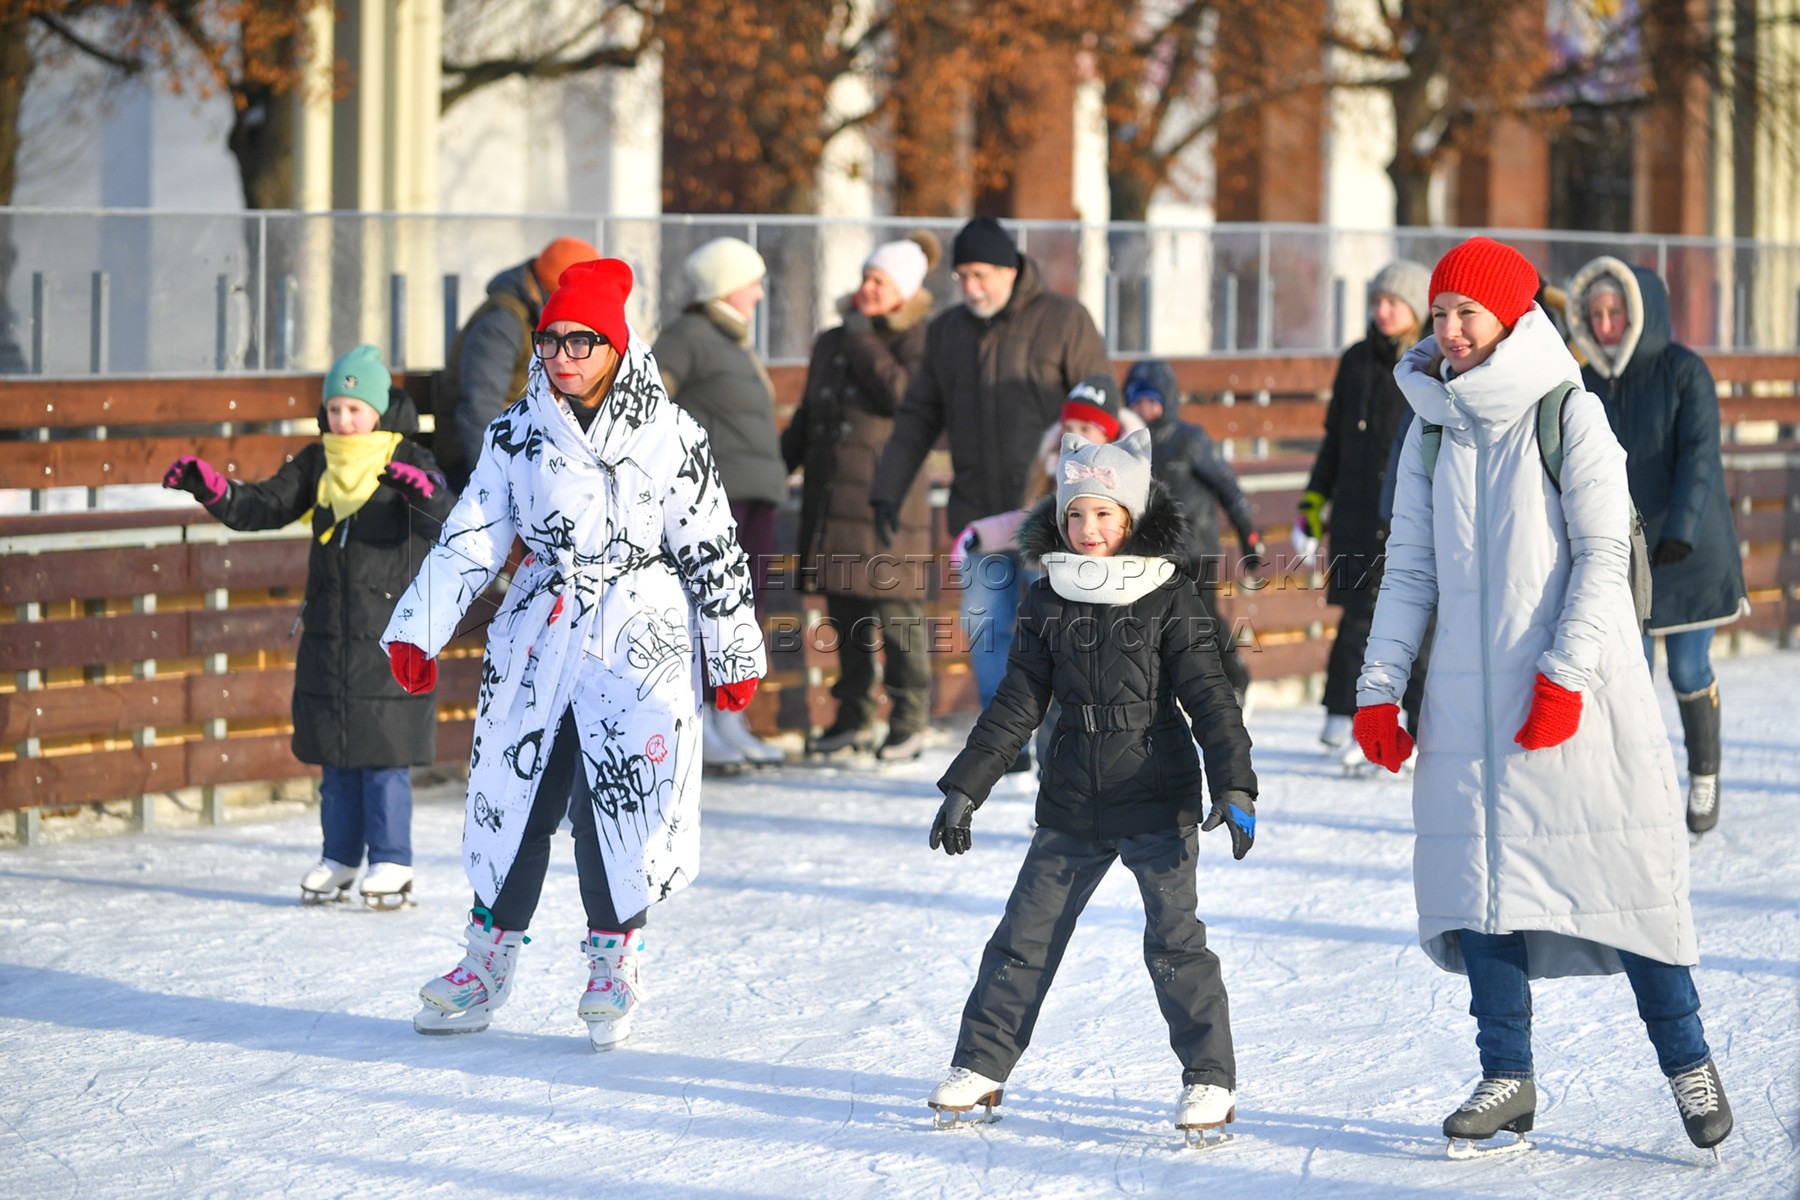 Покататься на коньках сегодня. Покататься на коньках в Москве. Покататься на коньках в Москве сейчас. Катание на коньках ВДНХ. Зима катание на коньках.